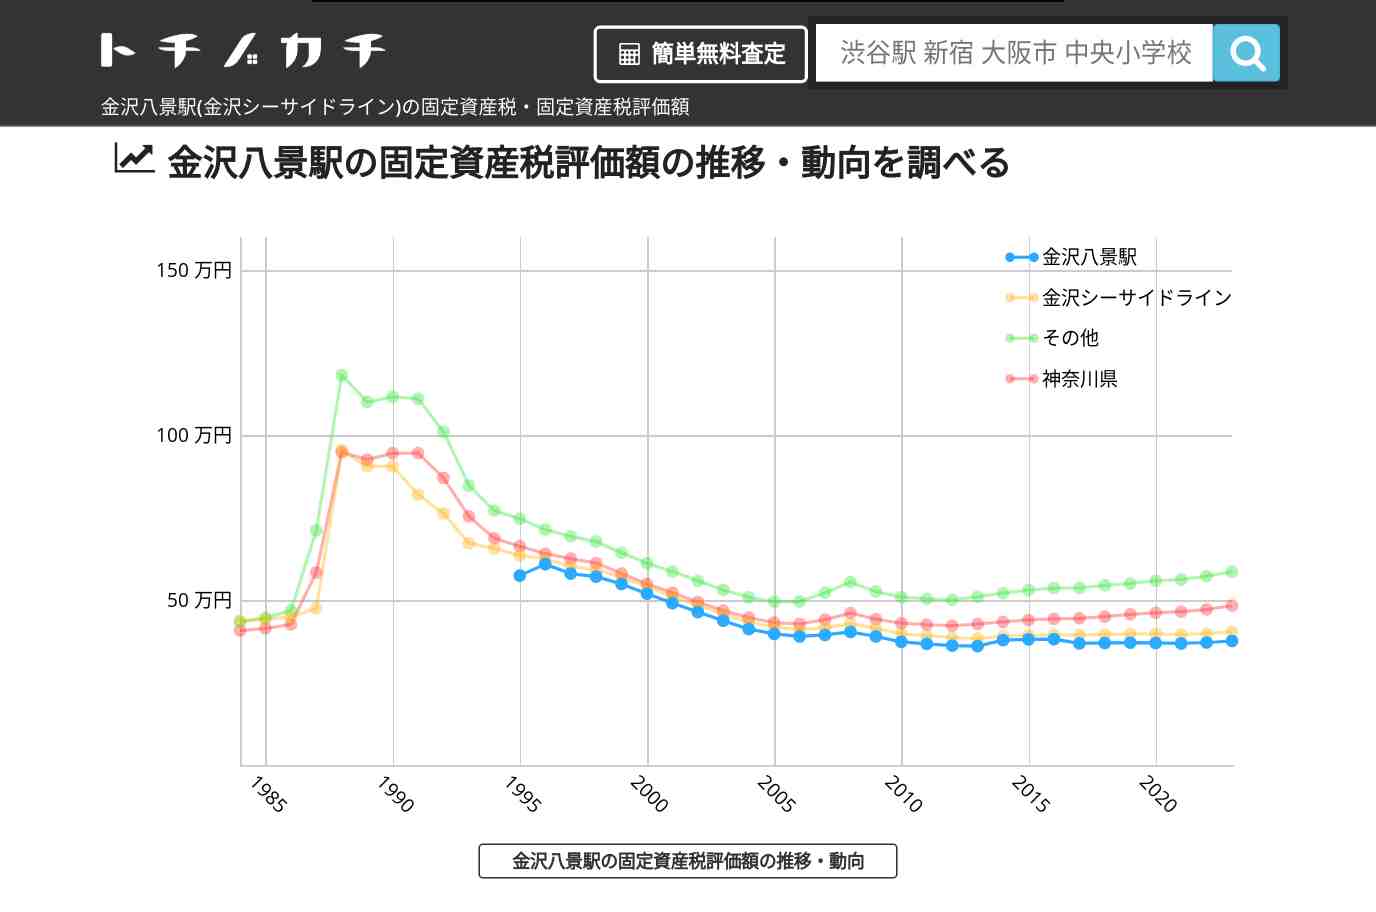 金沢八景駅(金沢シーサイドライン)の固定資産税・固定資産税評価額 | トチノカチ